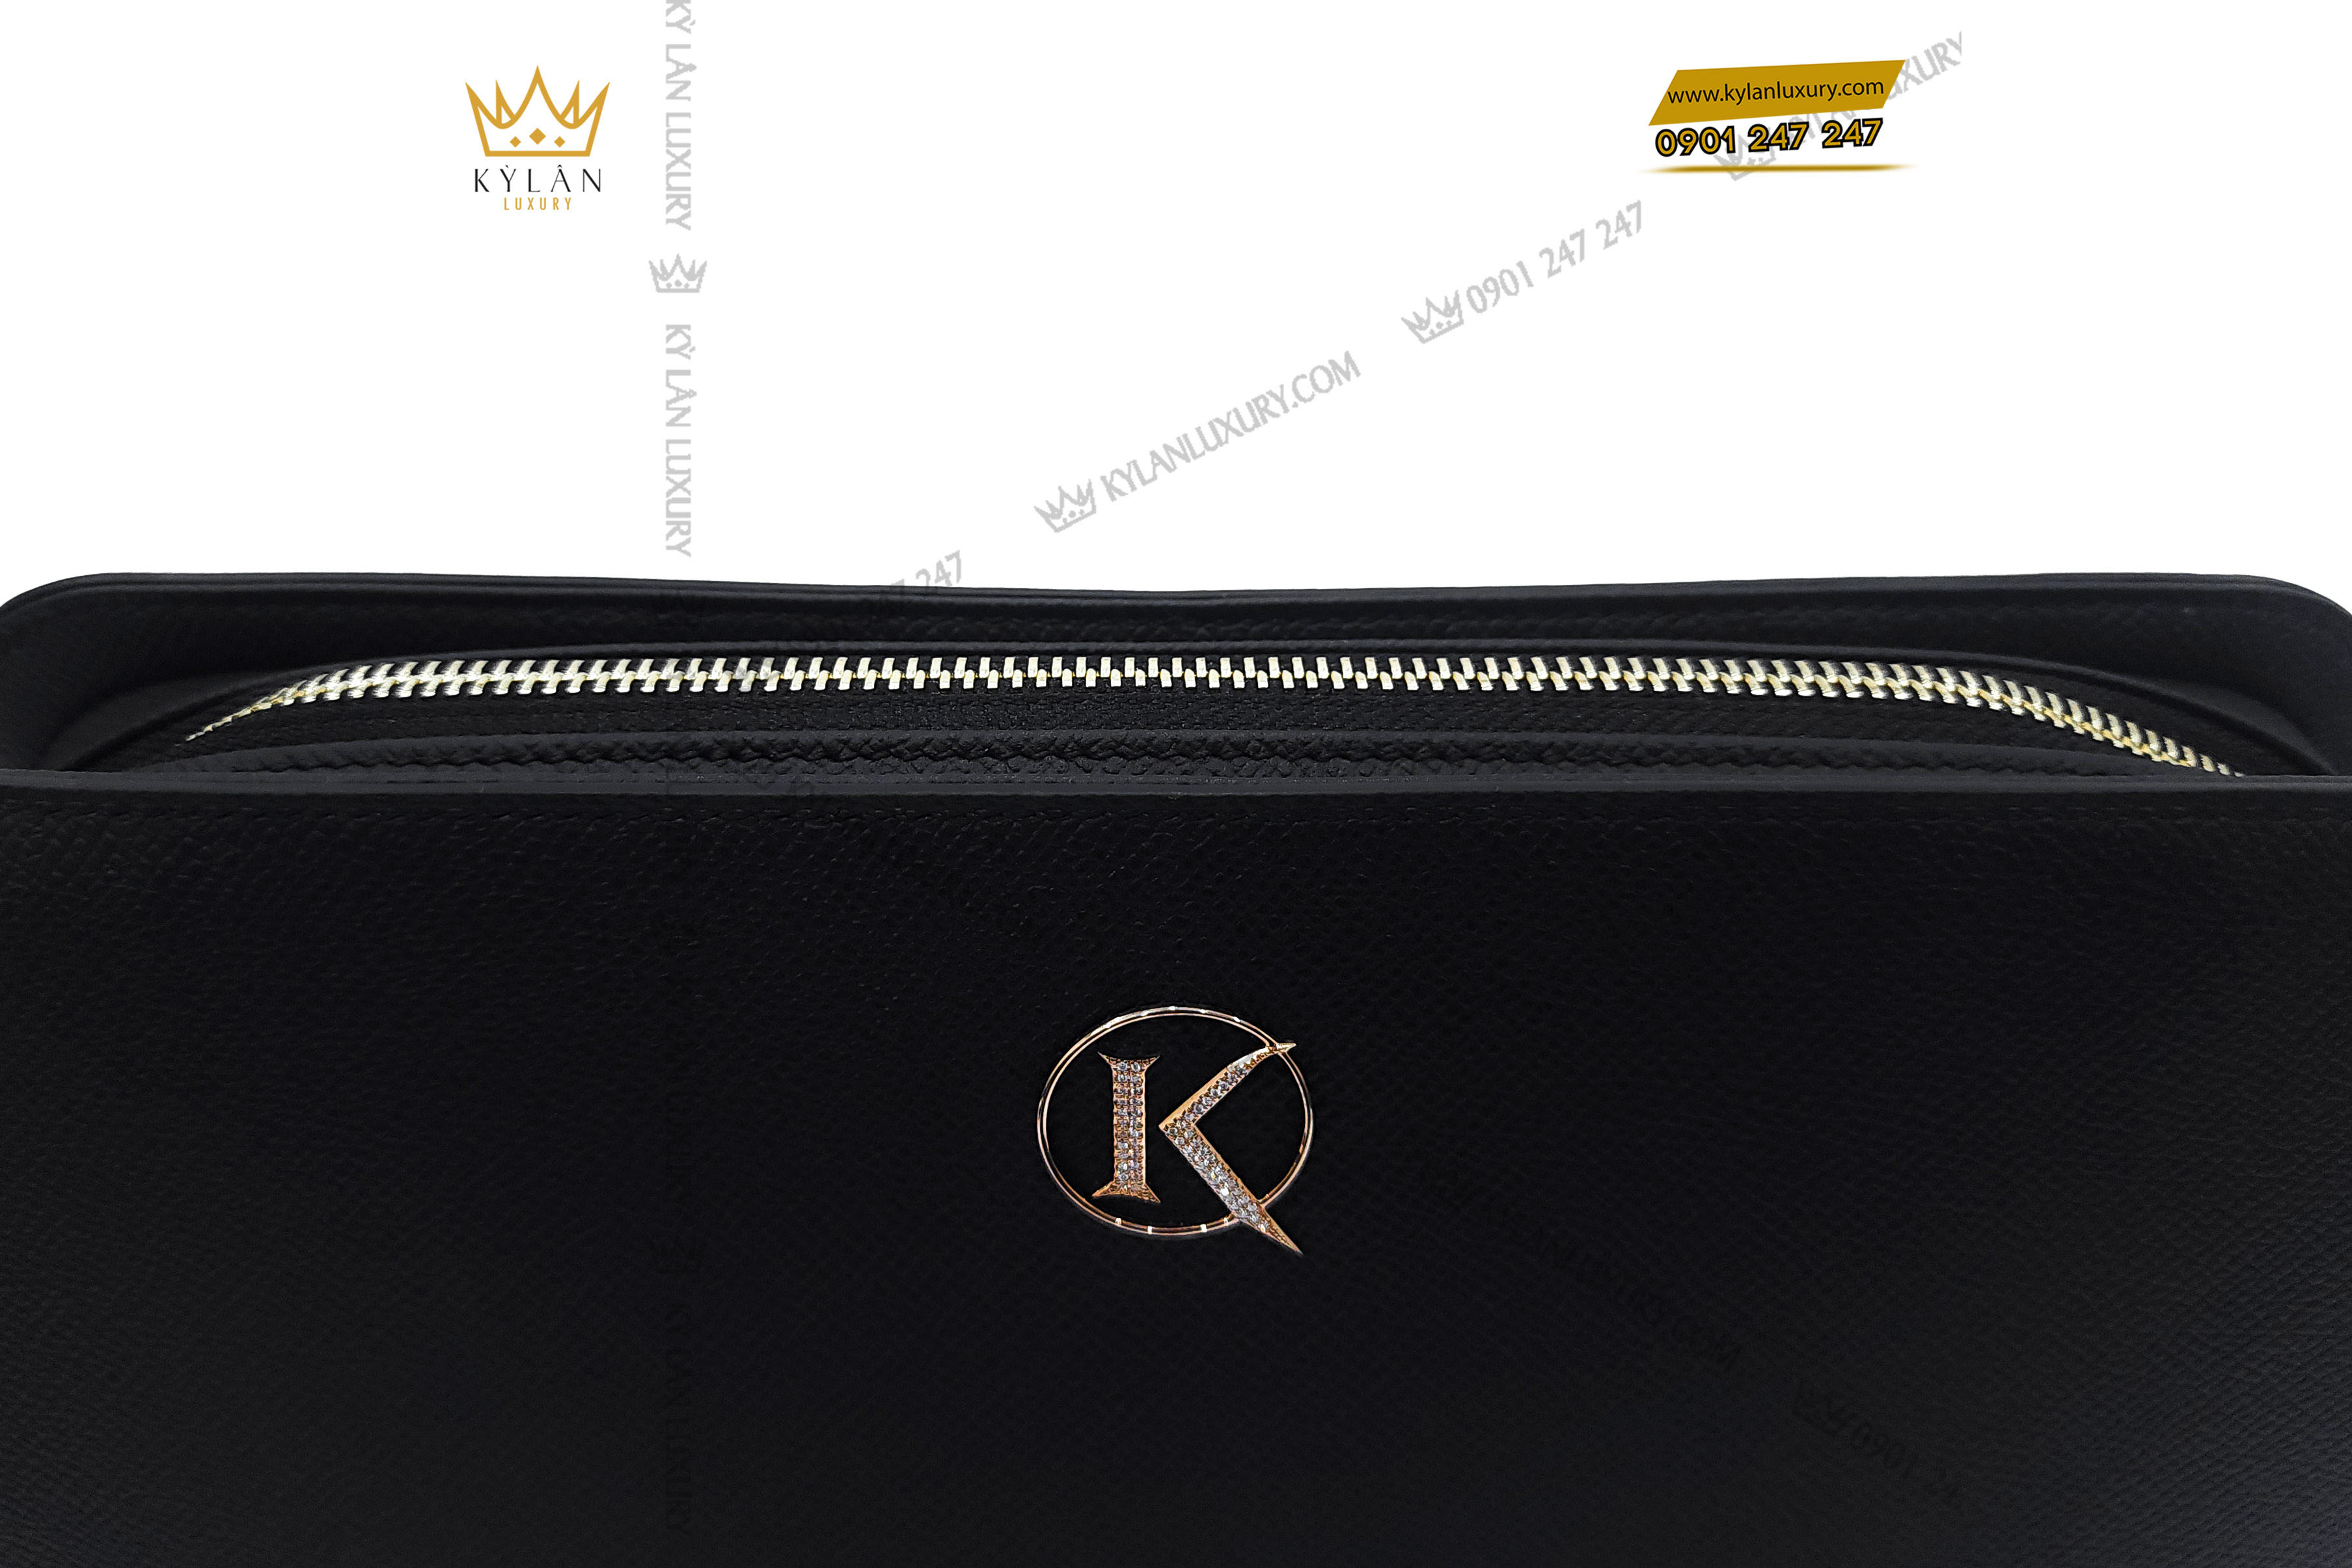 Túi Clutch nổi bật với logo chữ K vàng nguyên khối 18k Au750 đính kim cương siêu đẹp được Kỳ Lân tuyển chọn kĩ lưỡng